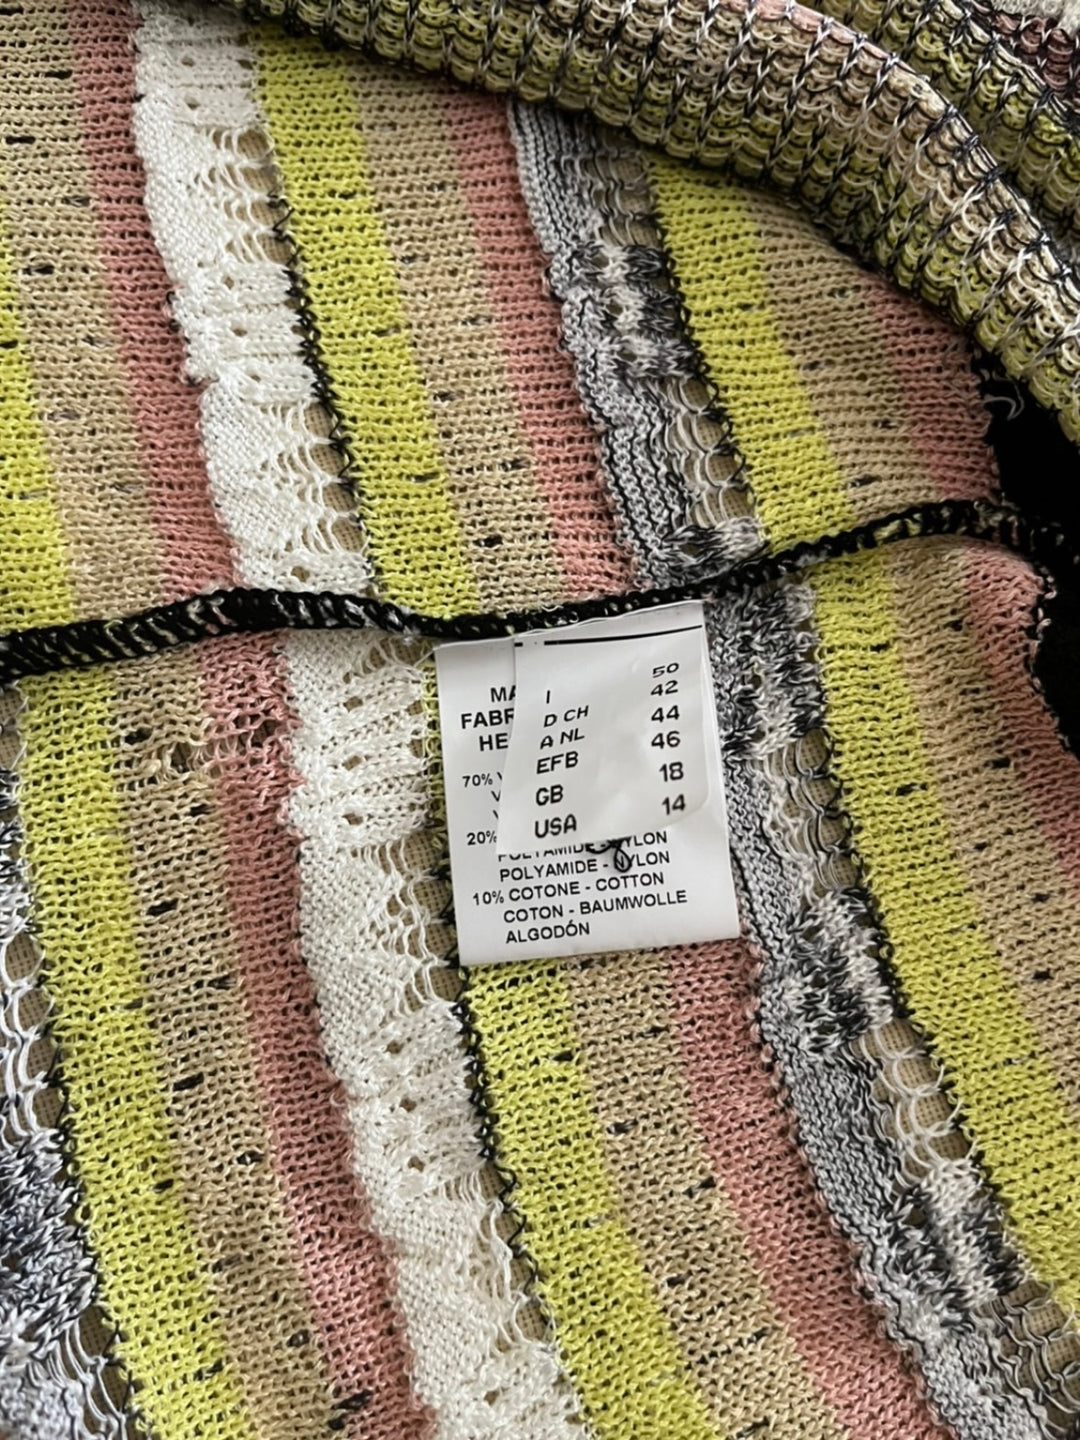 "MISSONI" multi-border knit cardigan